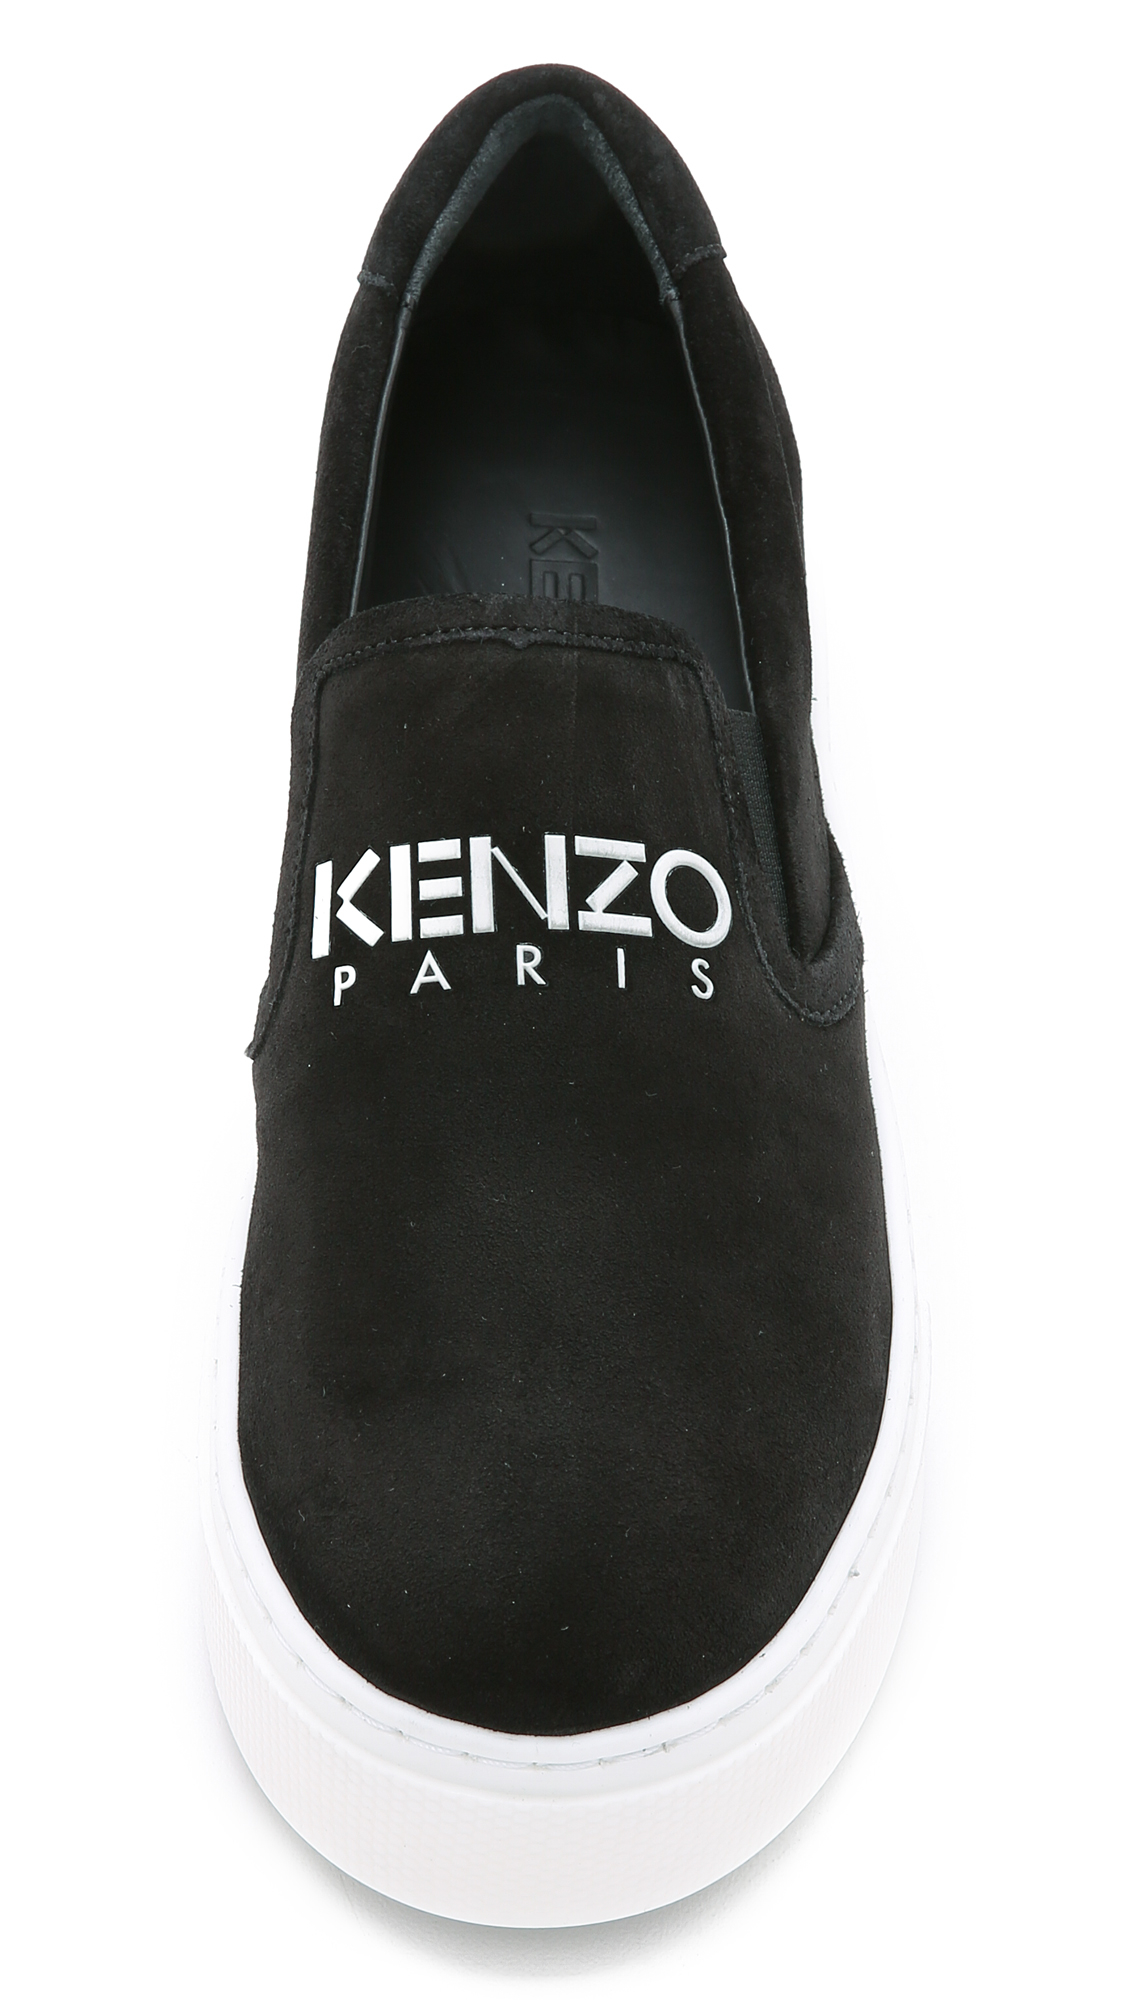 KENZO Suede Slip On Sneakers - Black - Lyst